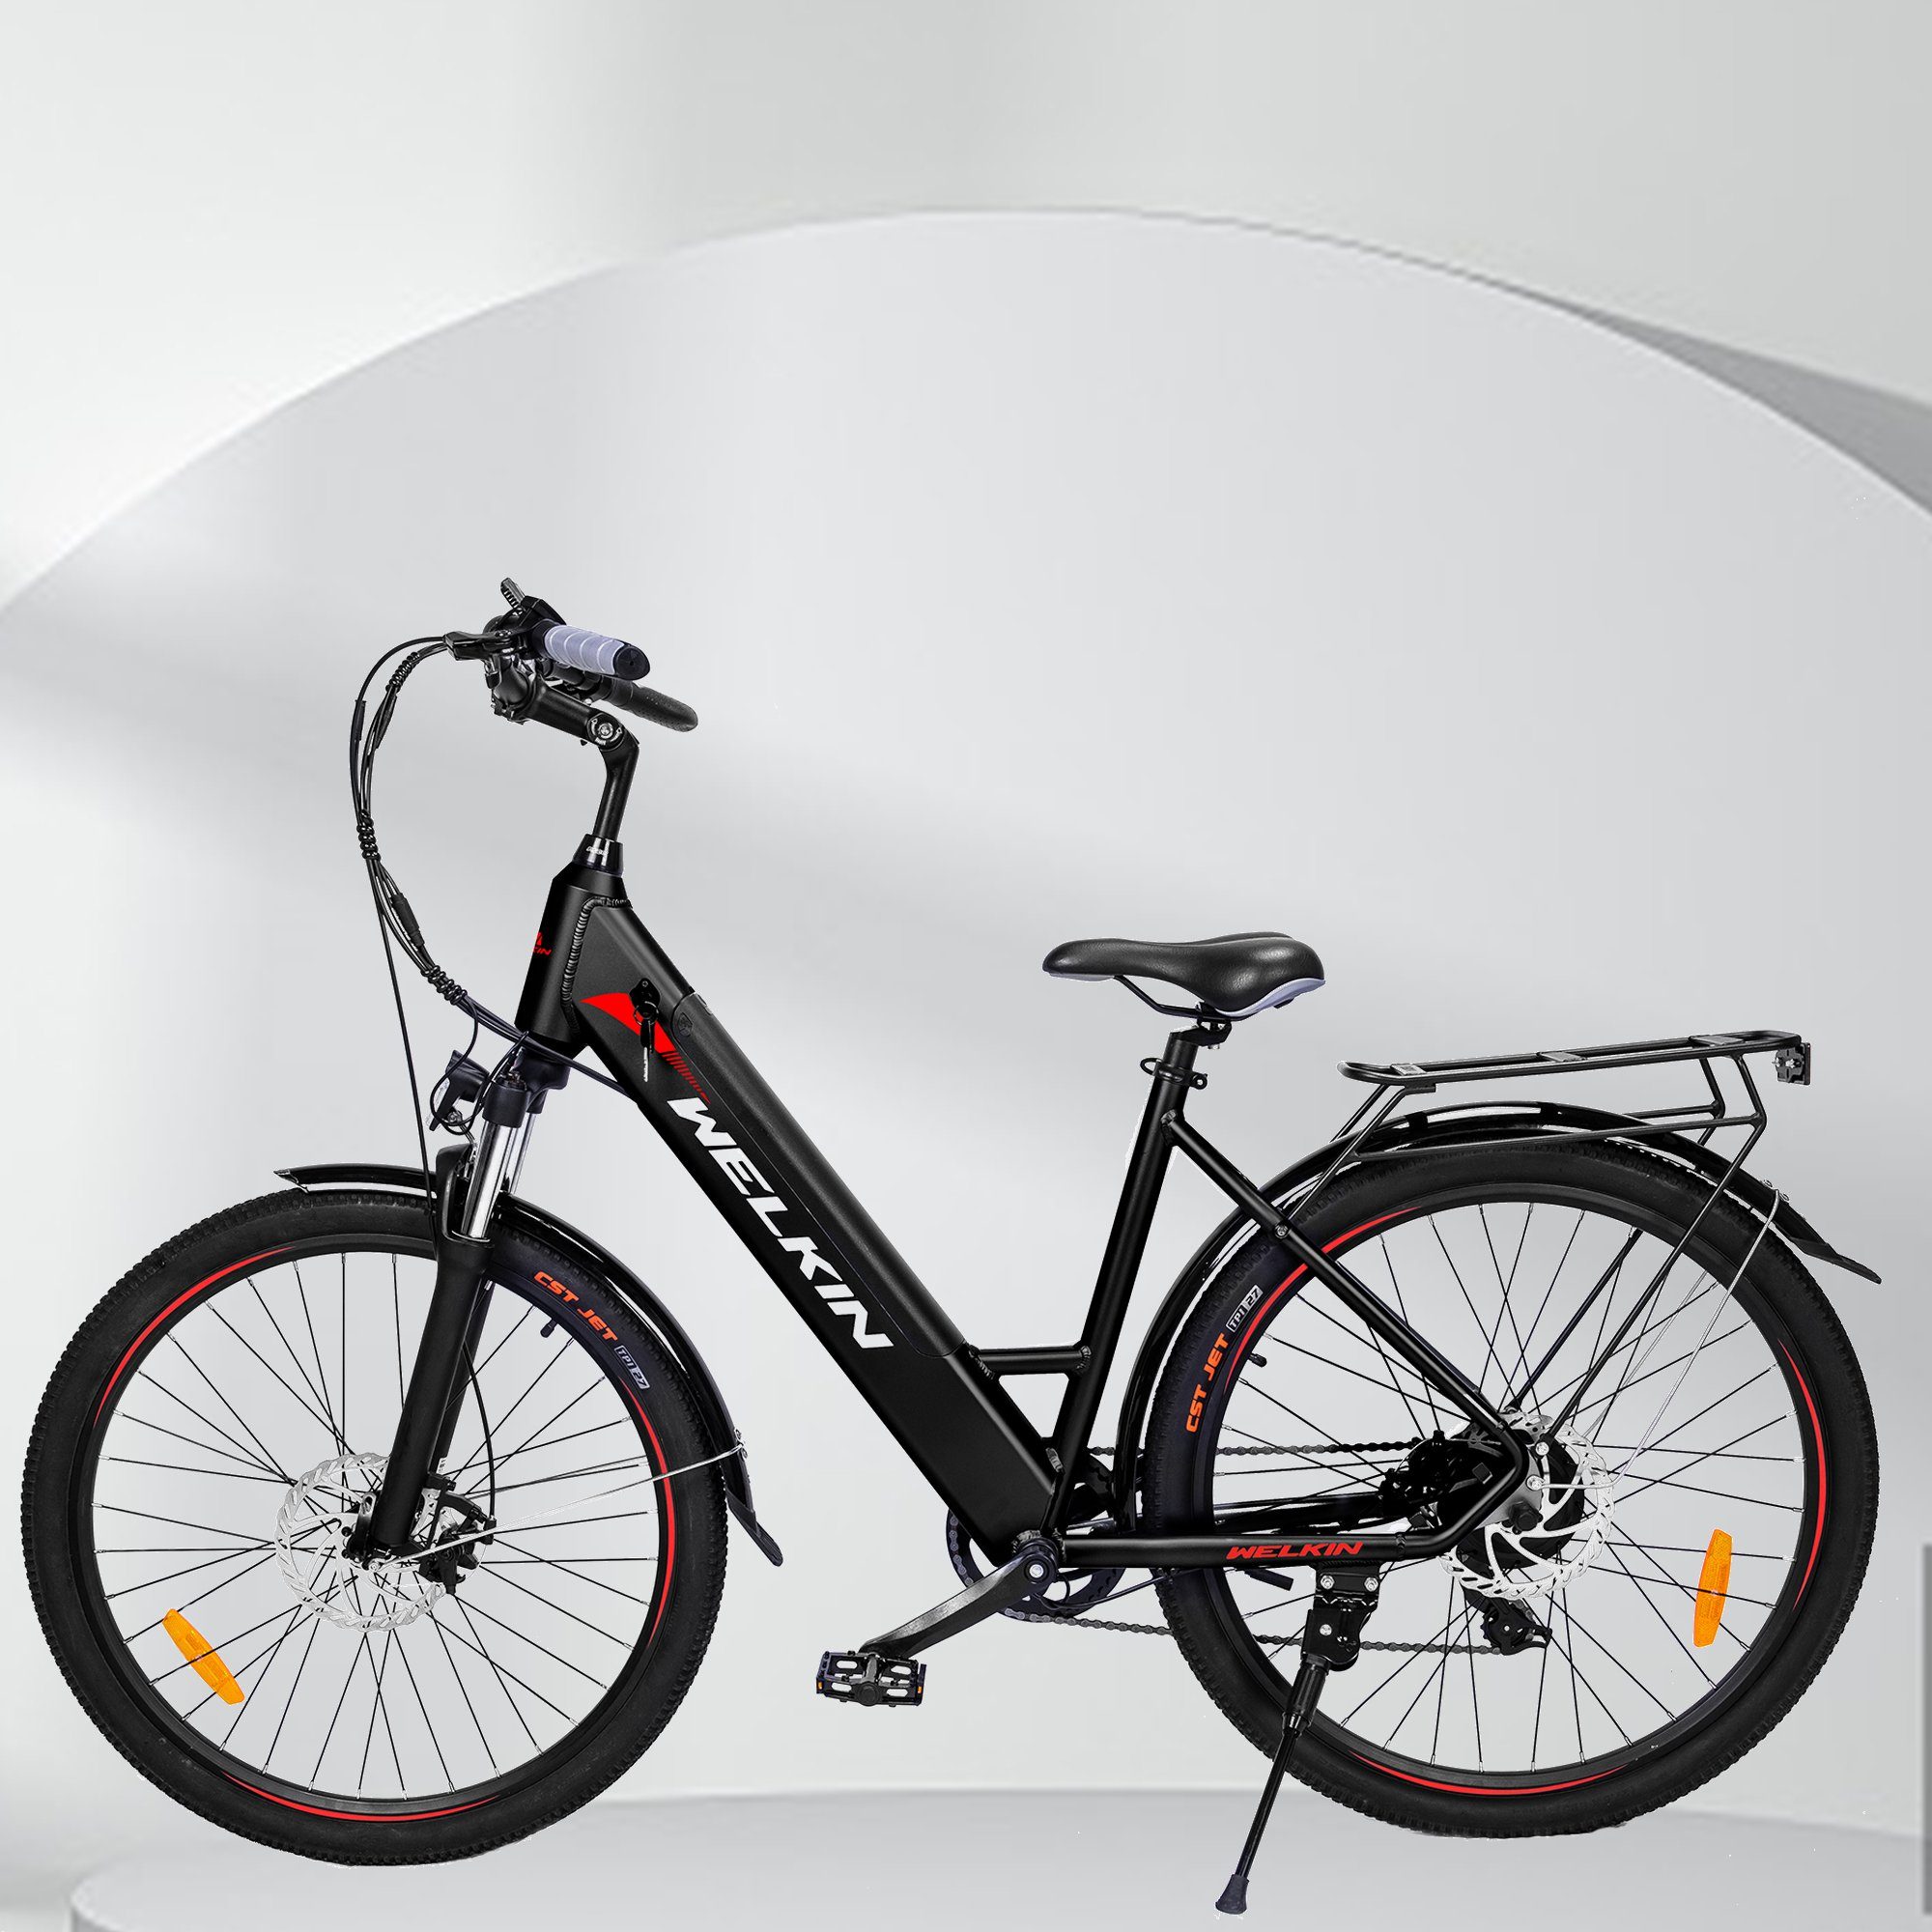 Fangqi E-Bike 27.5zoll Elektrofahrrad, Shimano 7Gang, 250W Motor,  36V/10.4AH Akku, Kettenschaltung, 250,00 W, (CST-Reifen, Kann 120 kg  tragen), Rücksitz, Elektrofahrräder für Herren und Damen, mit Reflexstreifen